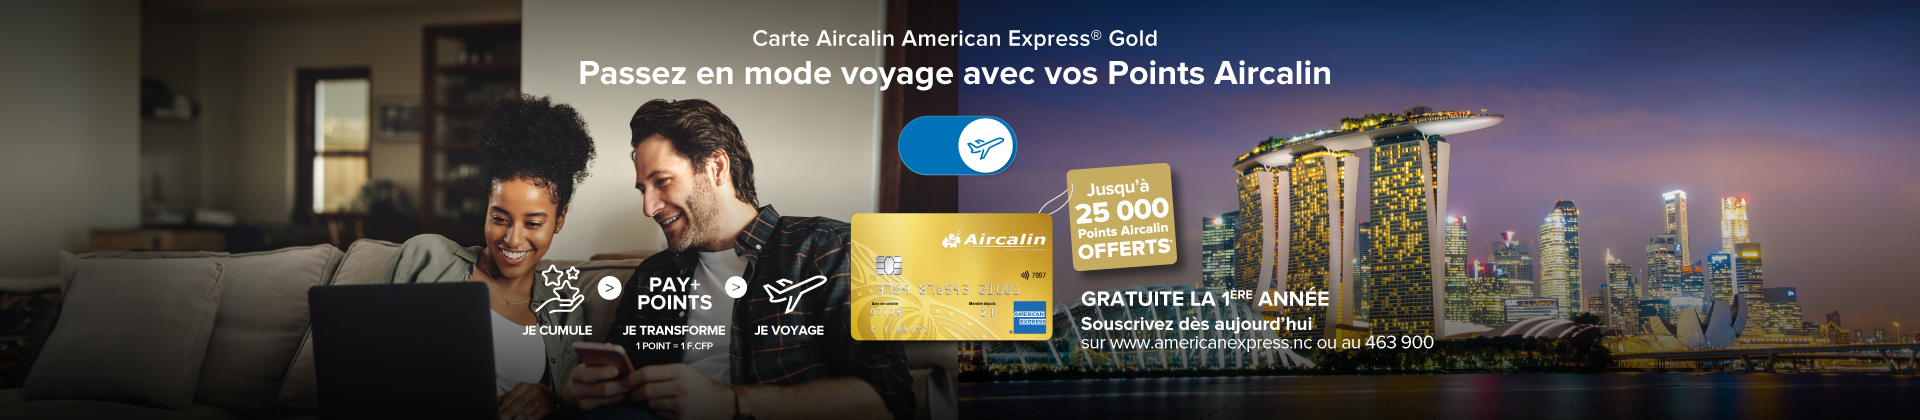 Carte Aircalin American Express® Gold